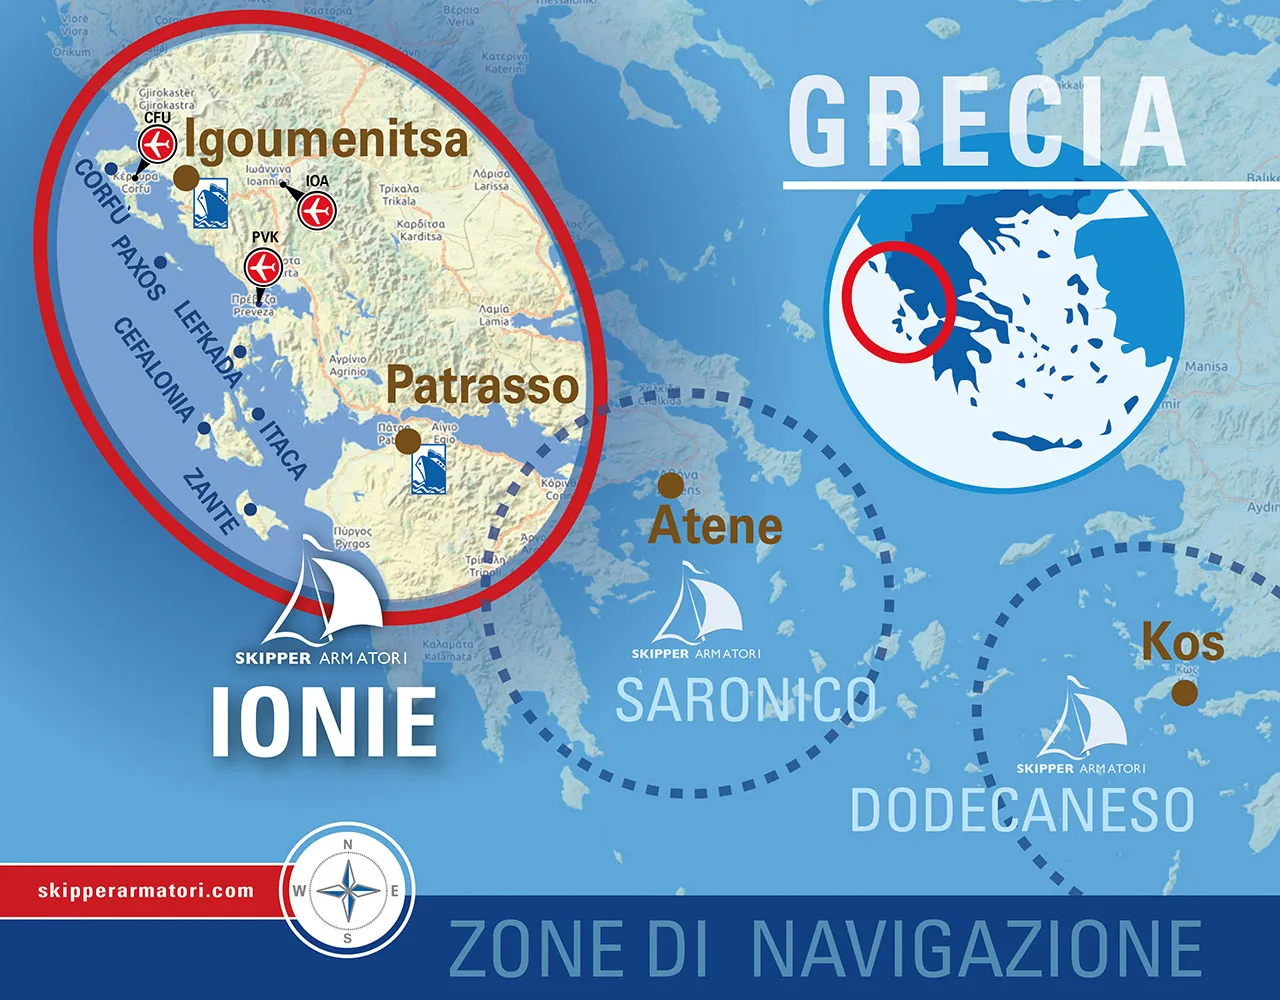 Mappa delle Zone di Navigazione per le vacanze in barca a vela alle Isole Ionie, in Grecia, di Skipper Armatori, con rotte per Igoumenitsa, Patrasso, e isole come Paxos, Lefkada, Itaca e Zante.